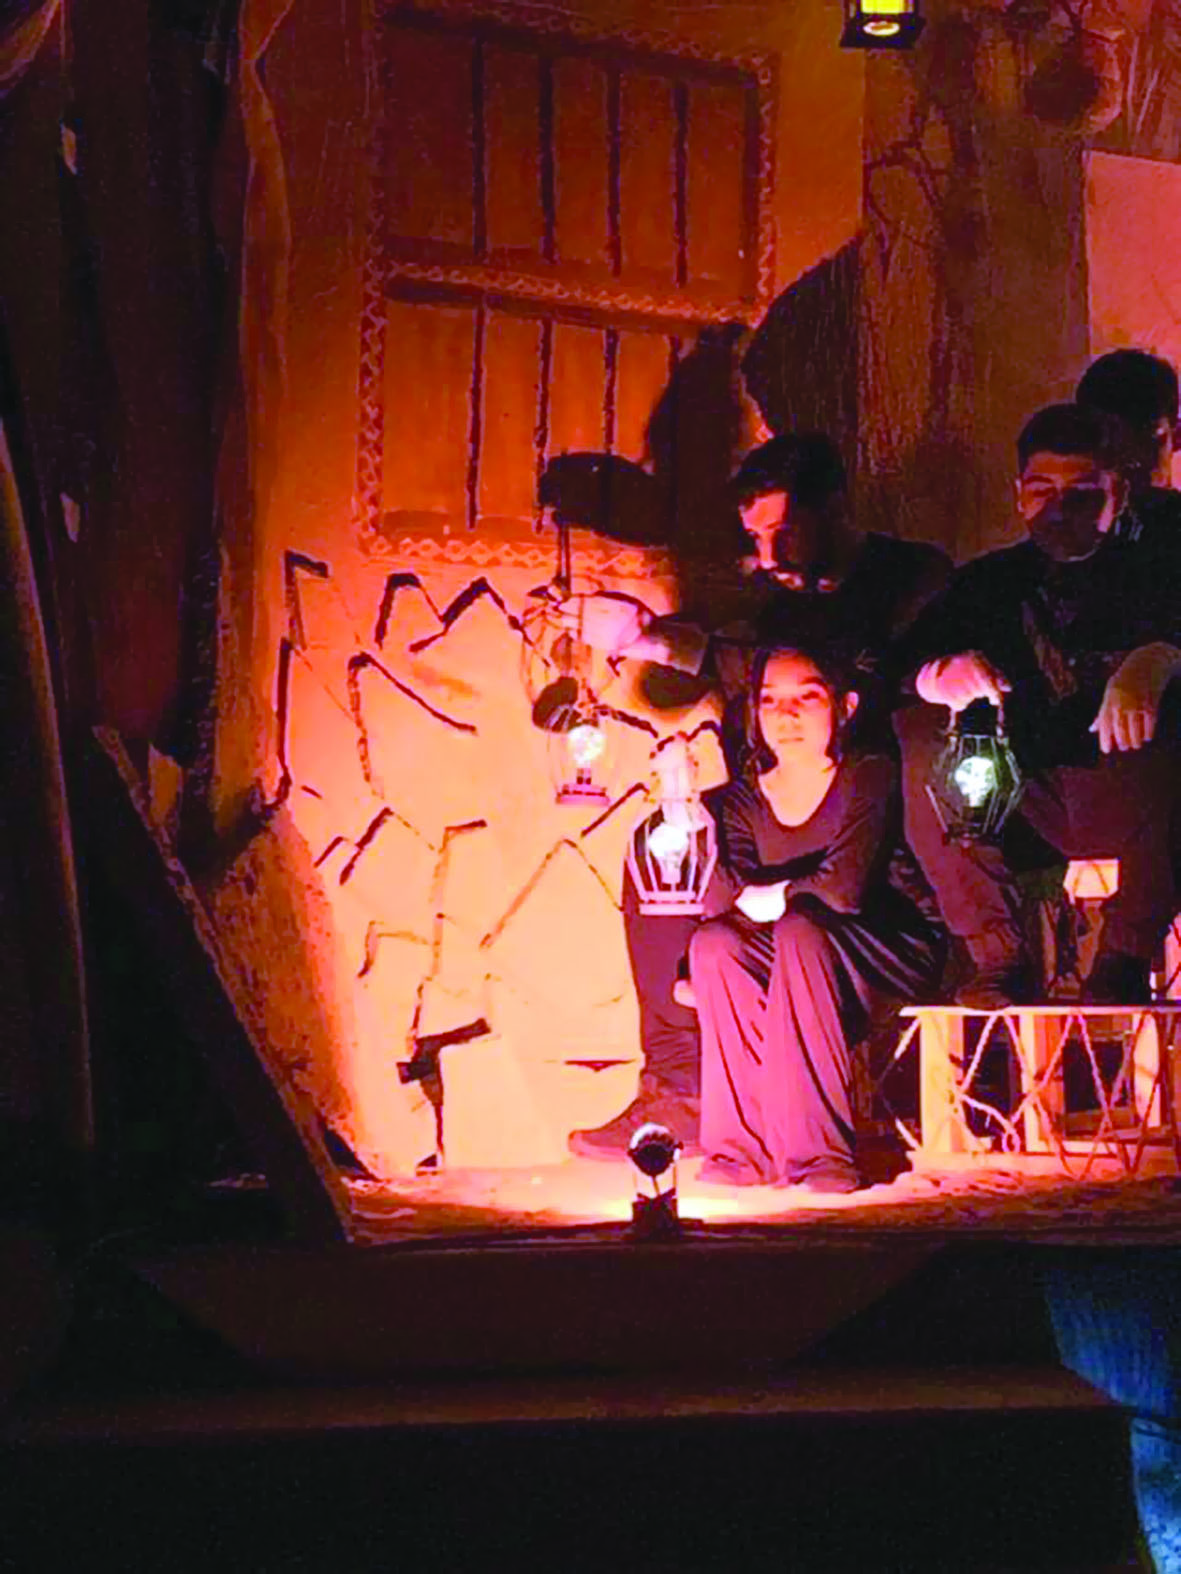 فرقة مسرح عمان تقدم مسرحية "أقول استريح"